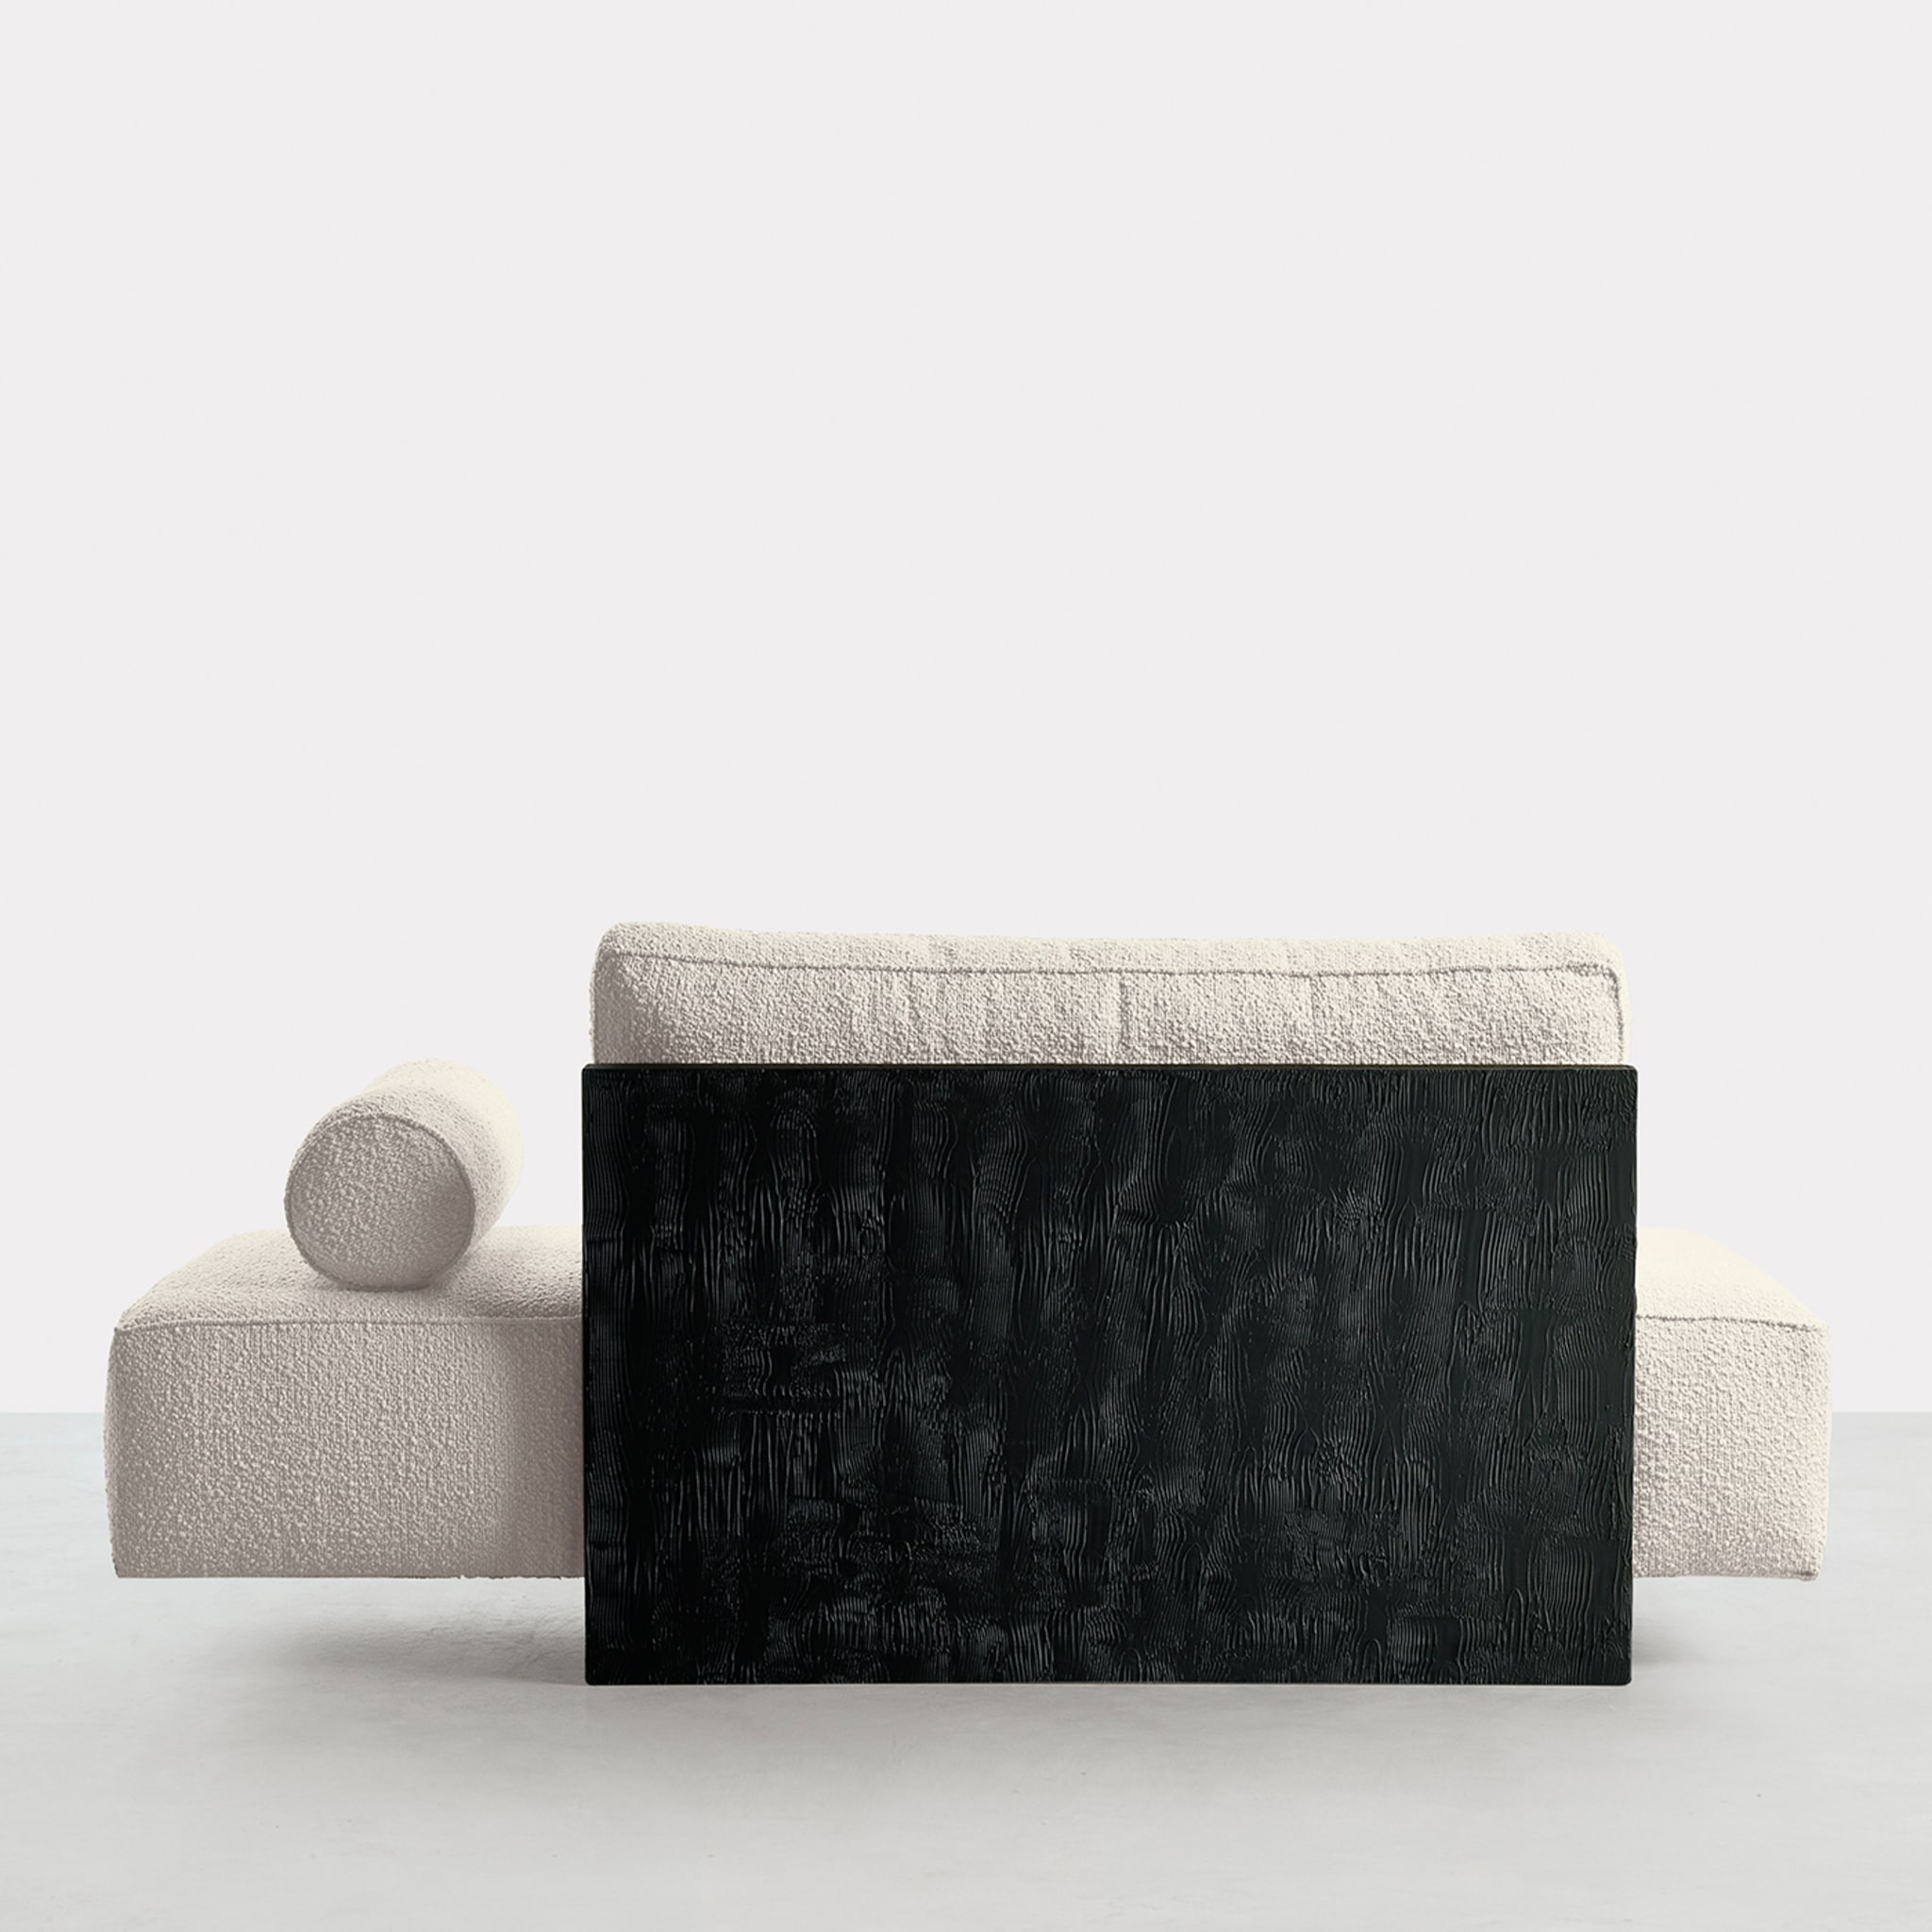 Zelig White Sofa by Dainelli Studio - Alternative view 2